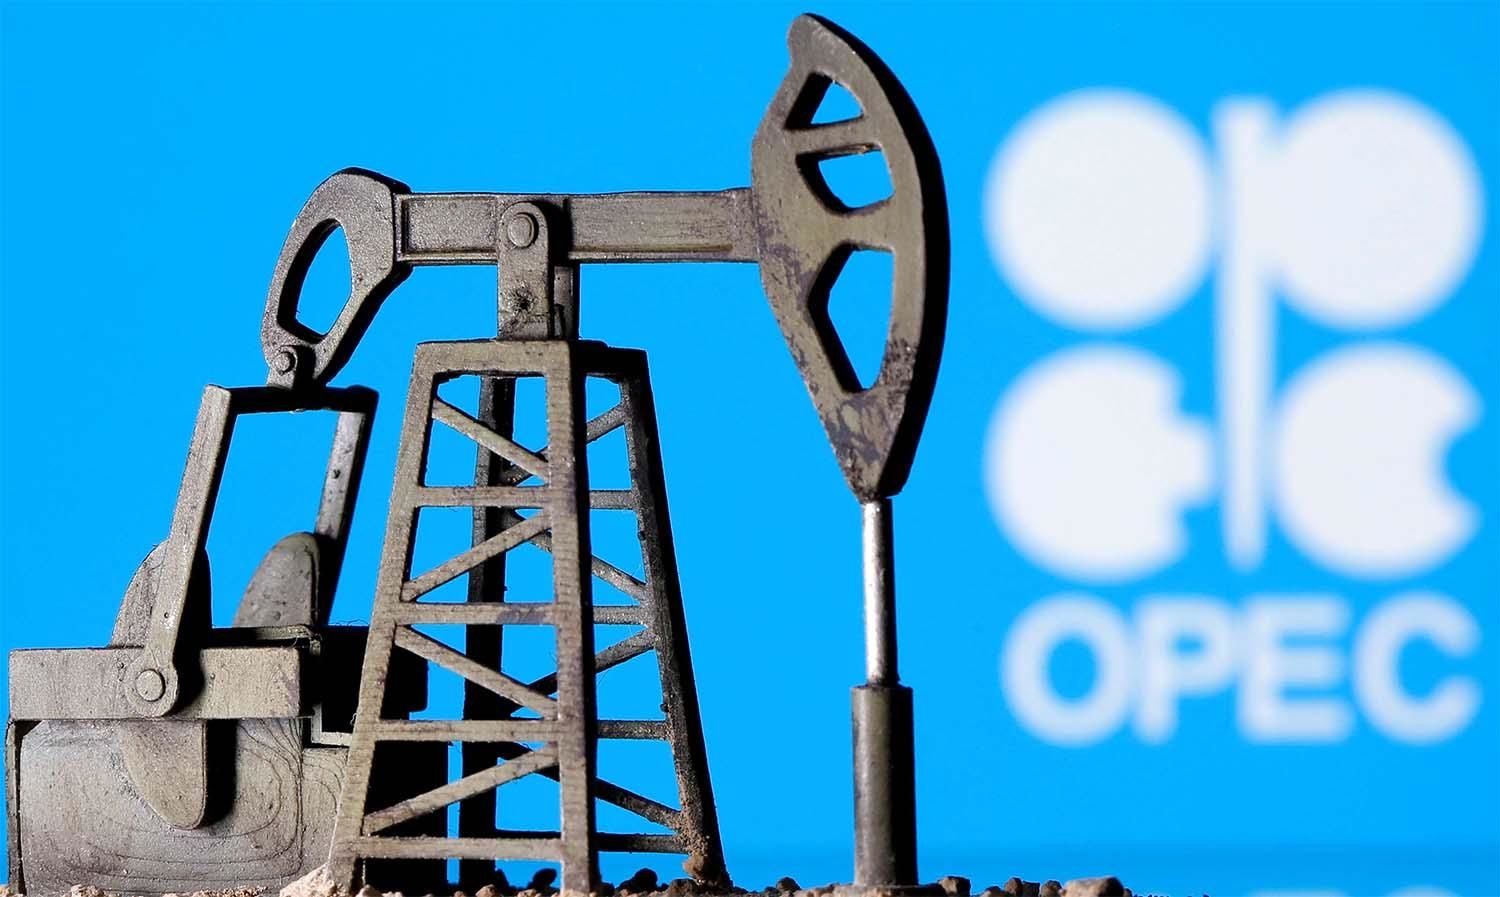  پیش بینی بلومبرگ درباره میزان تولید نفت ایران بعد از انتخابات آمریکا